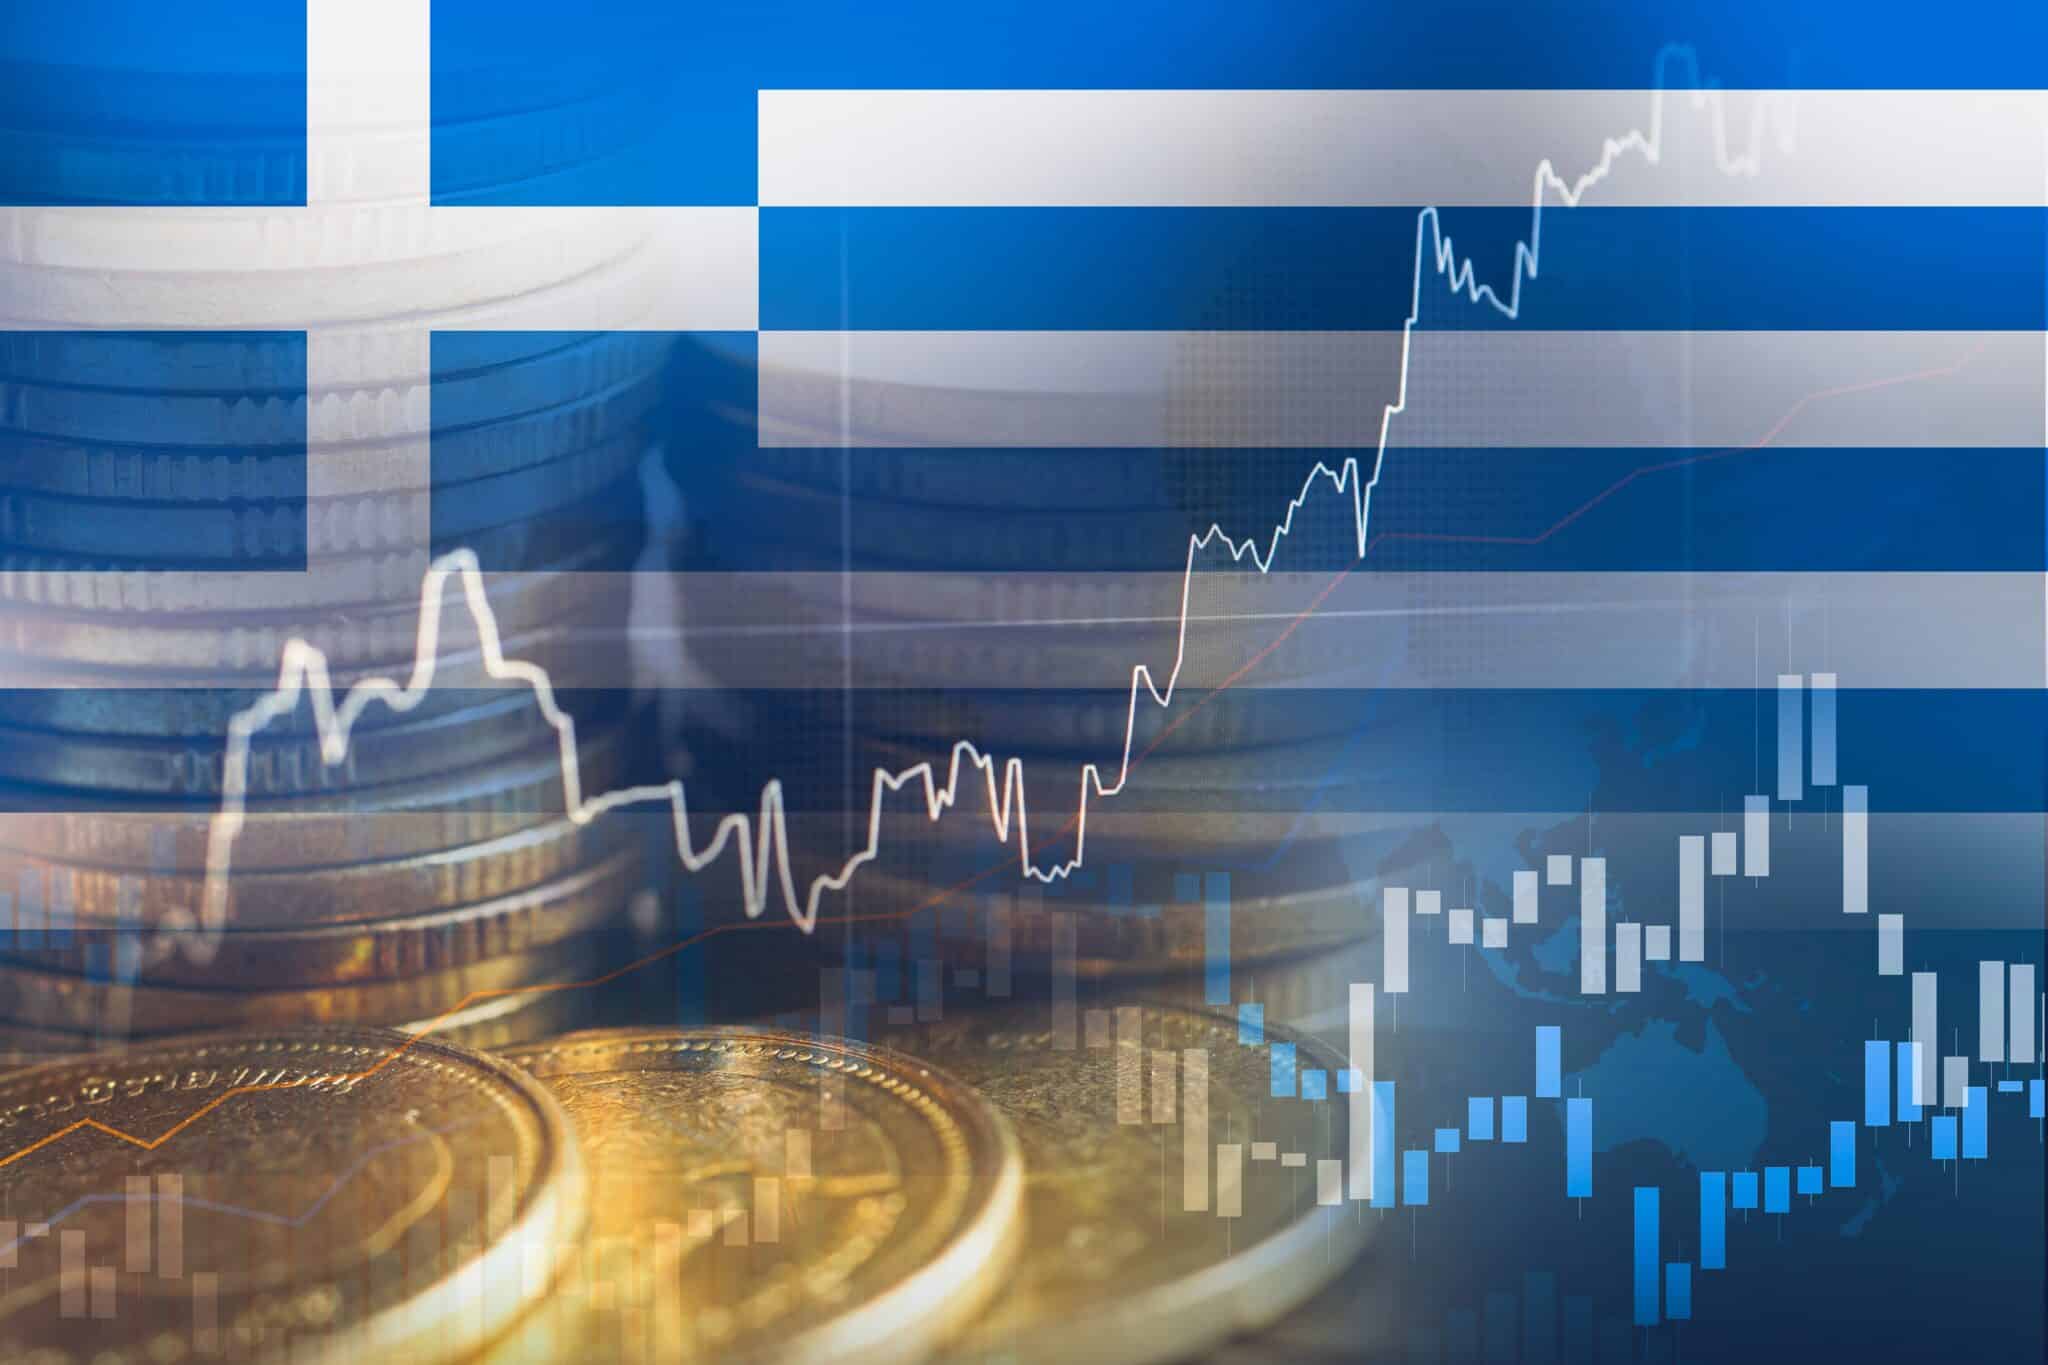 יוצאת מהמשבר: יוון מתכננת פירעון מוקדם מהצפוי של הלוואות בשווי 8 מיליארד יורו